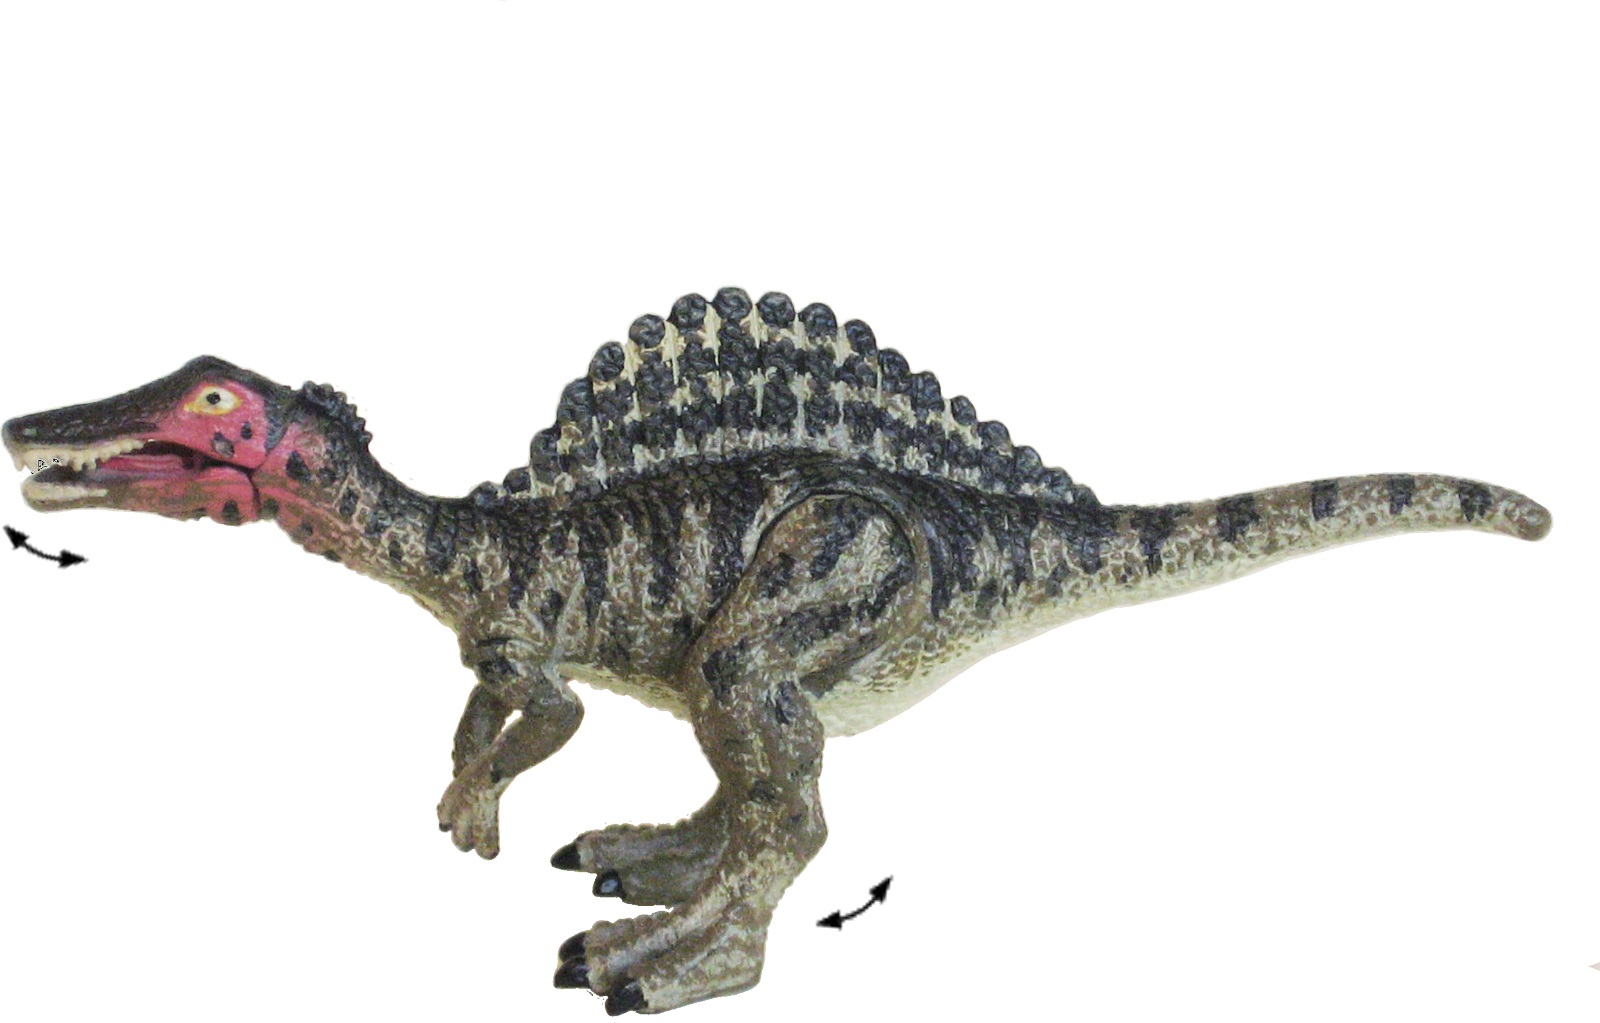 楽天市場 講談社監修 Move 恐竜 フィギュア スピノサウルス 白亜紀 肉食恐竜 図鑑 おもちゃ プレゼント ３d 恐竜 おもちゃのヤマサン